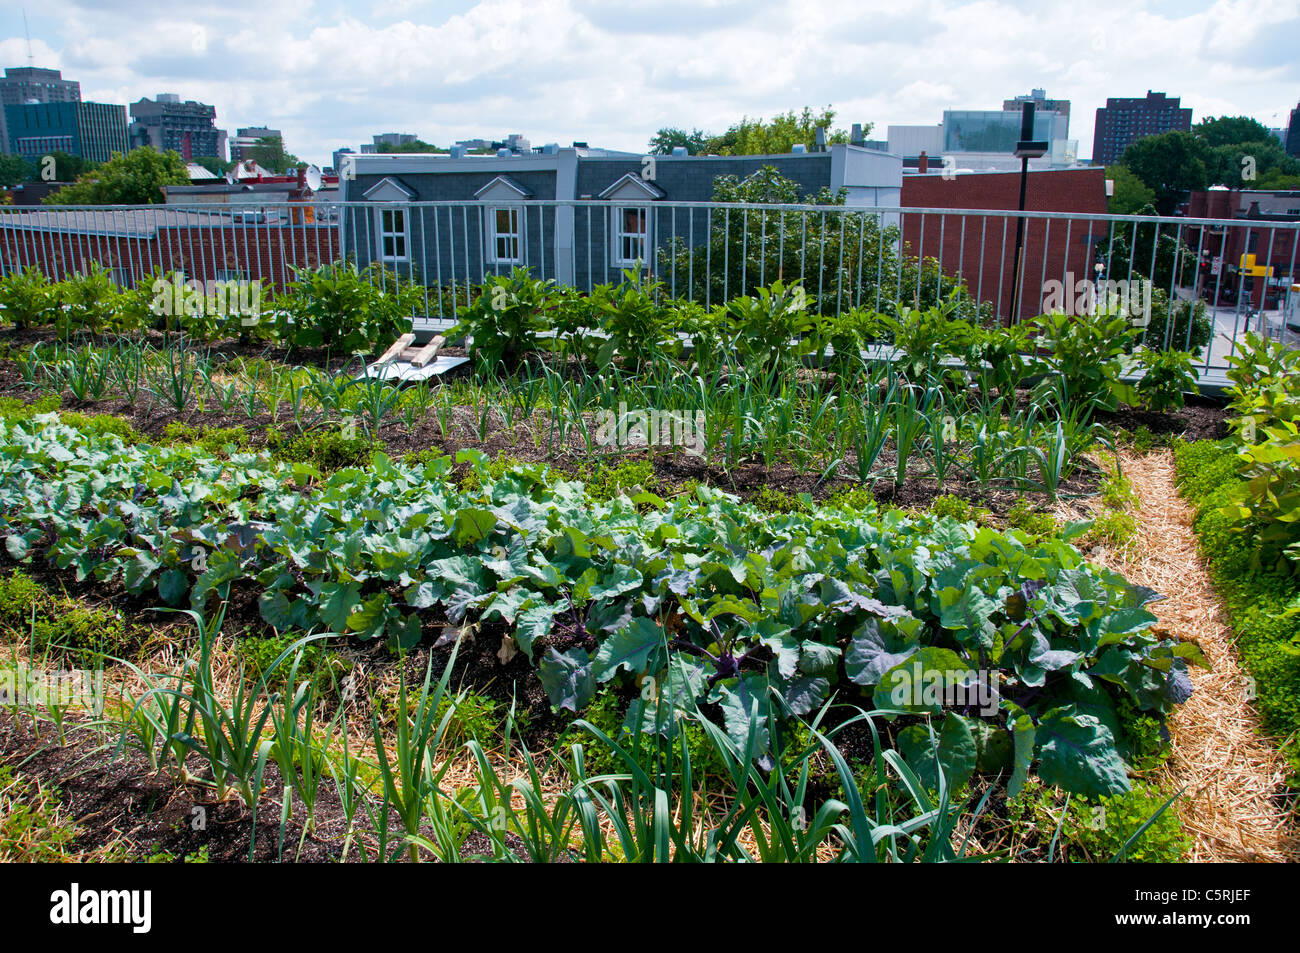 Montreal sul tetto verde giardino vegetale al Santropol Roulant centro che distribuisce i pasti per persone con ridotta mobilità Foto Stock